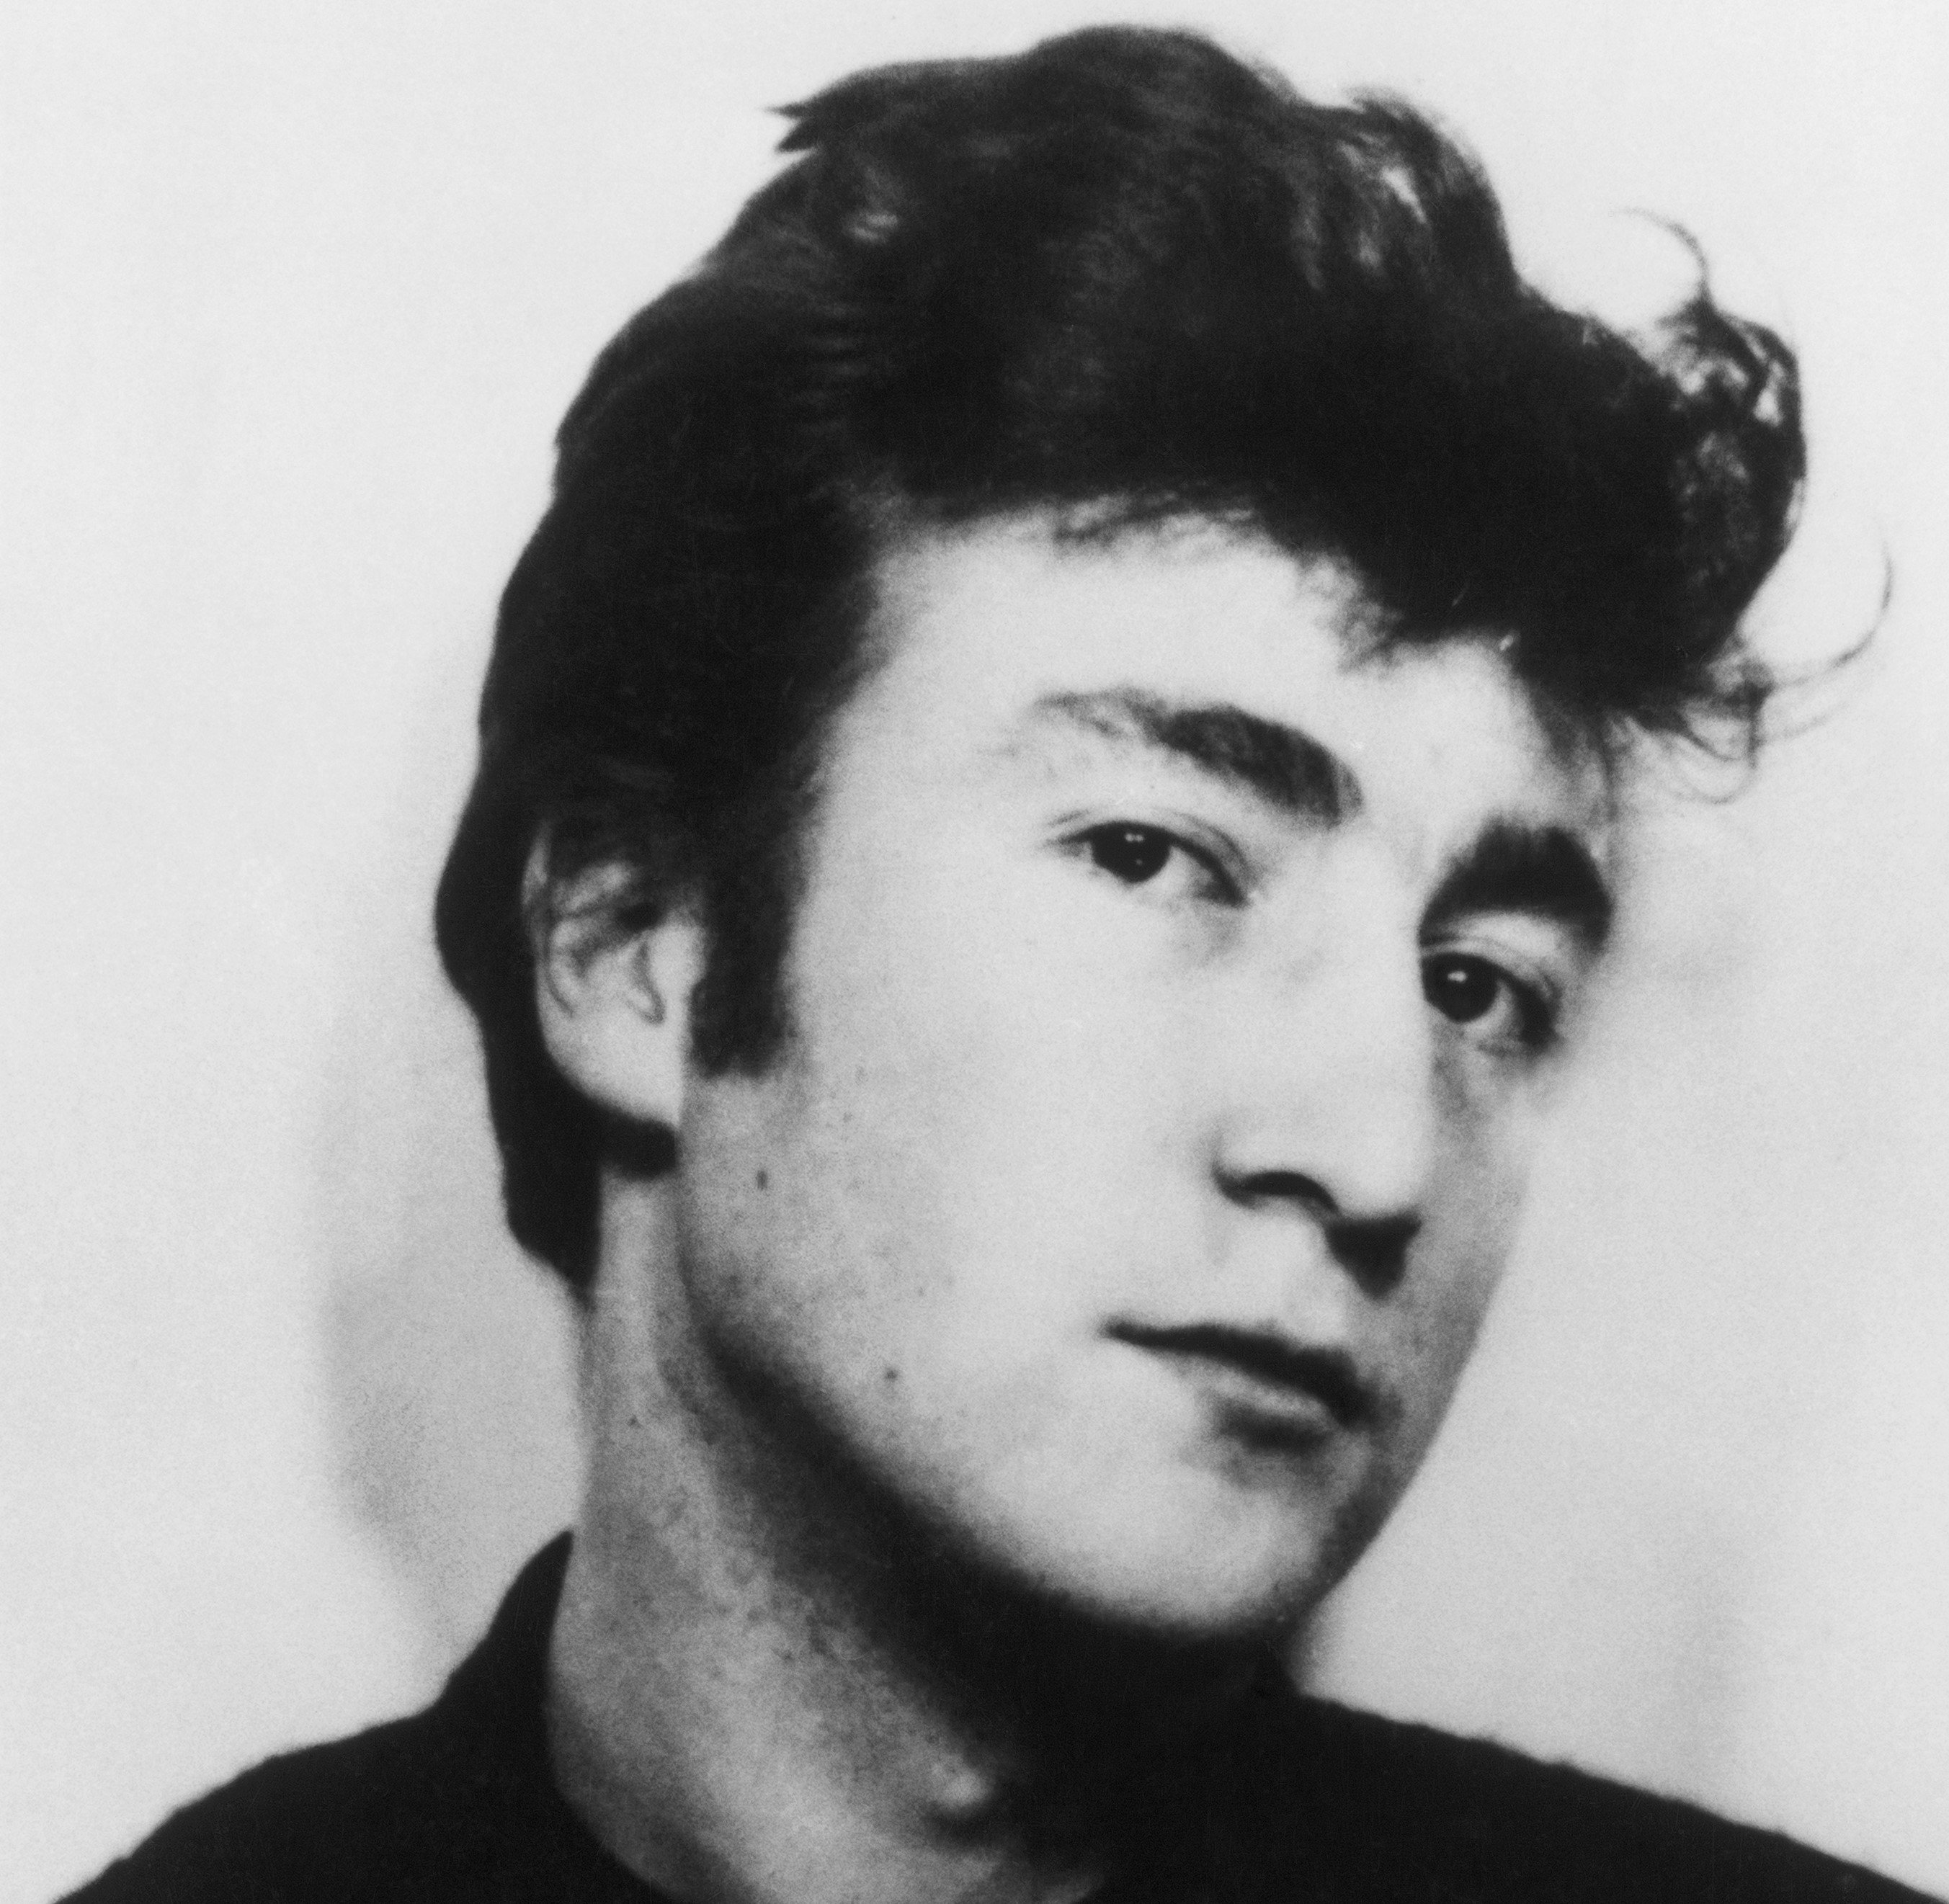 The Beatles' John Lennon as a teenager